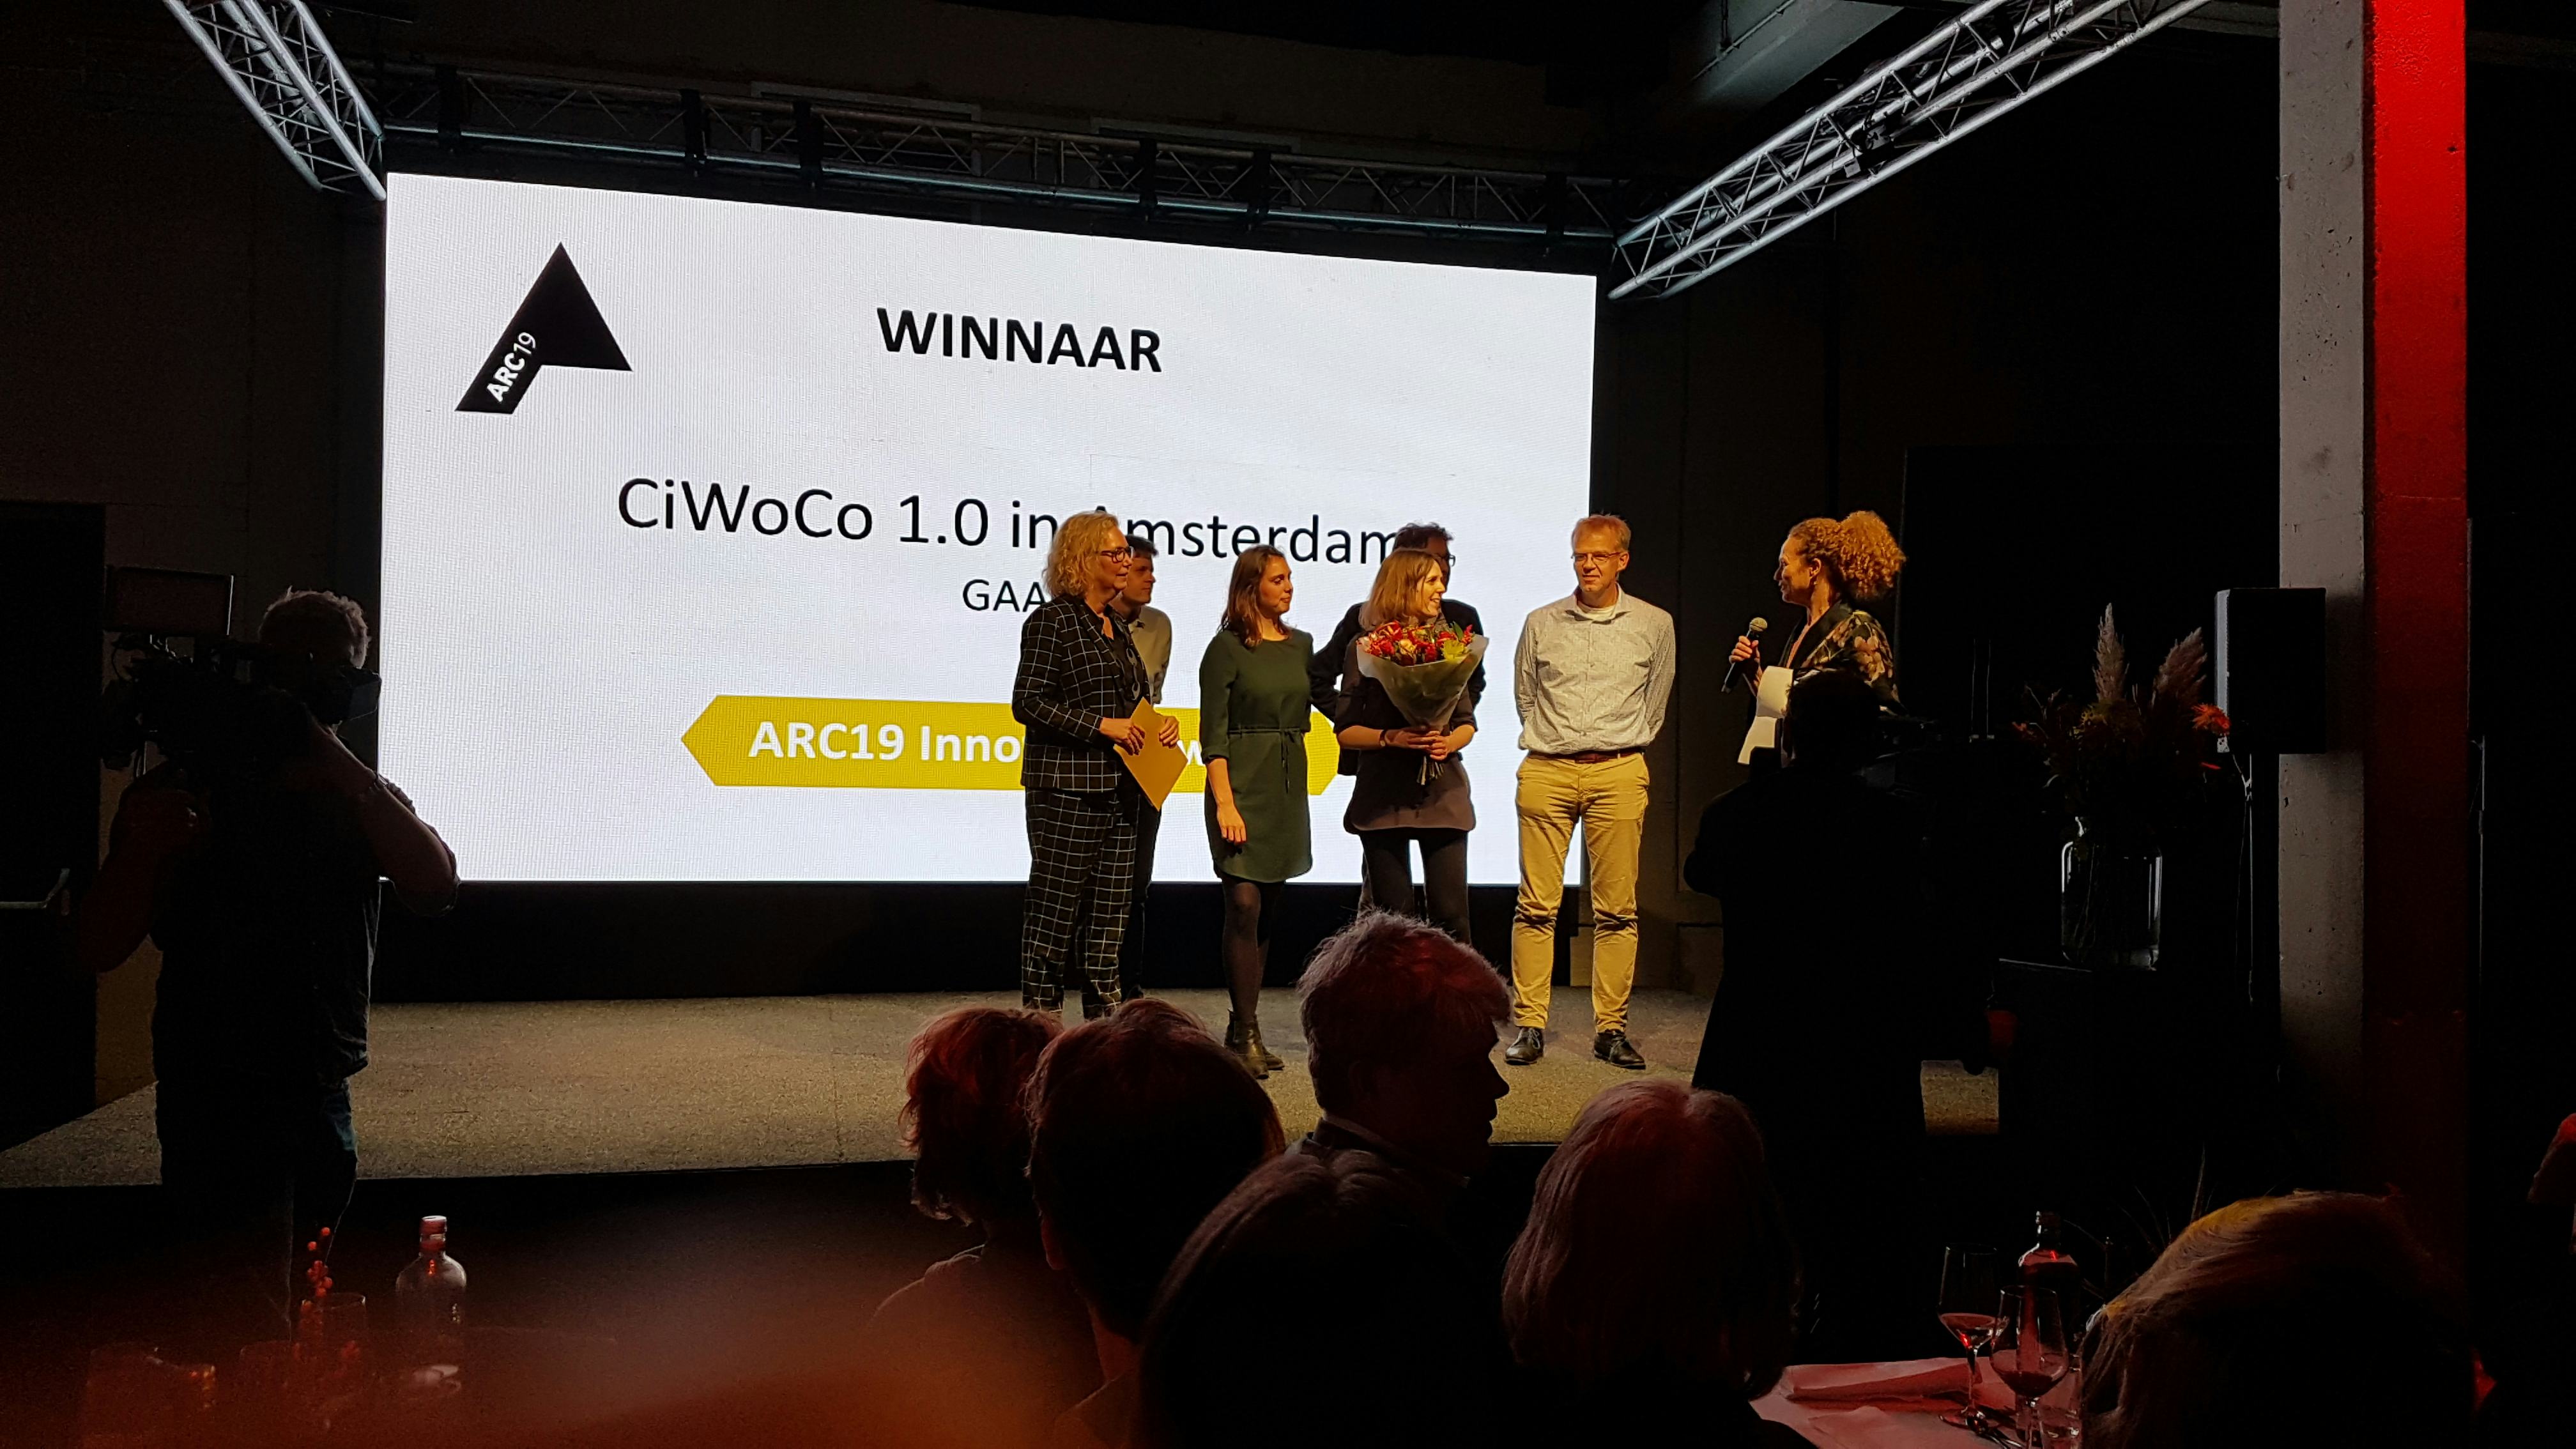 GAAGA ontvangt uit handen van Irma van Oort van KCAP de ARC19 Innovatie Award voor CiWoCo 1.0